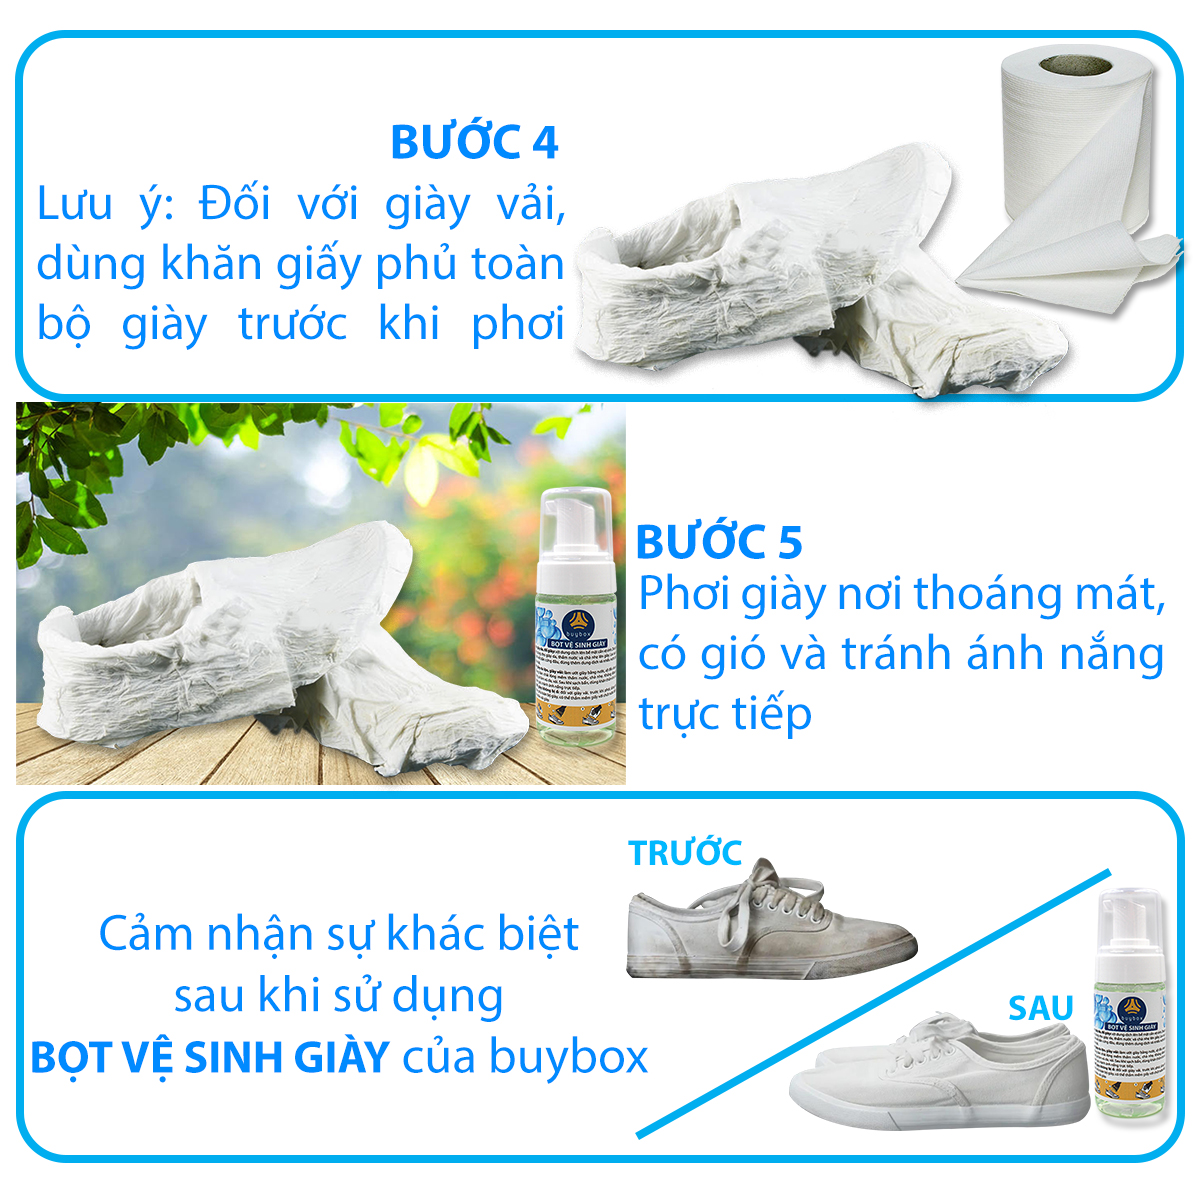 Bọt vệ sinh giày và giặt giày (150ml) - buybox - PKBB60 - quấn khăn giấy trắng che phủ toàn bộ bề mặt giày chất liệu vải trước khi phơi để tránh bị ố vàng giày